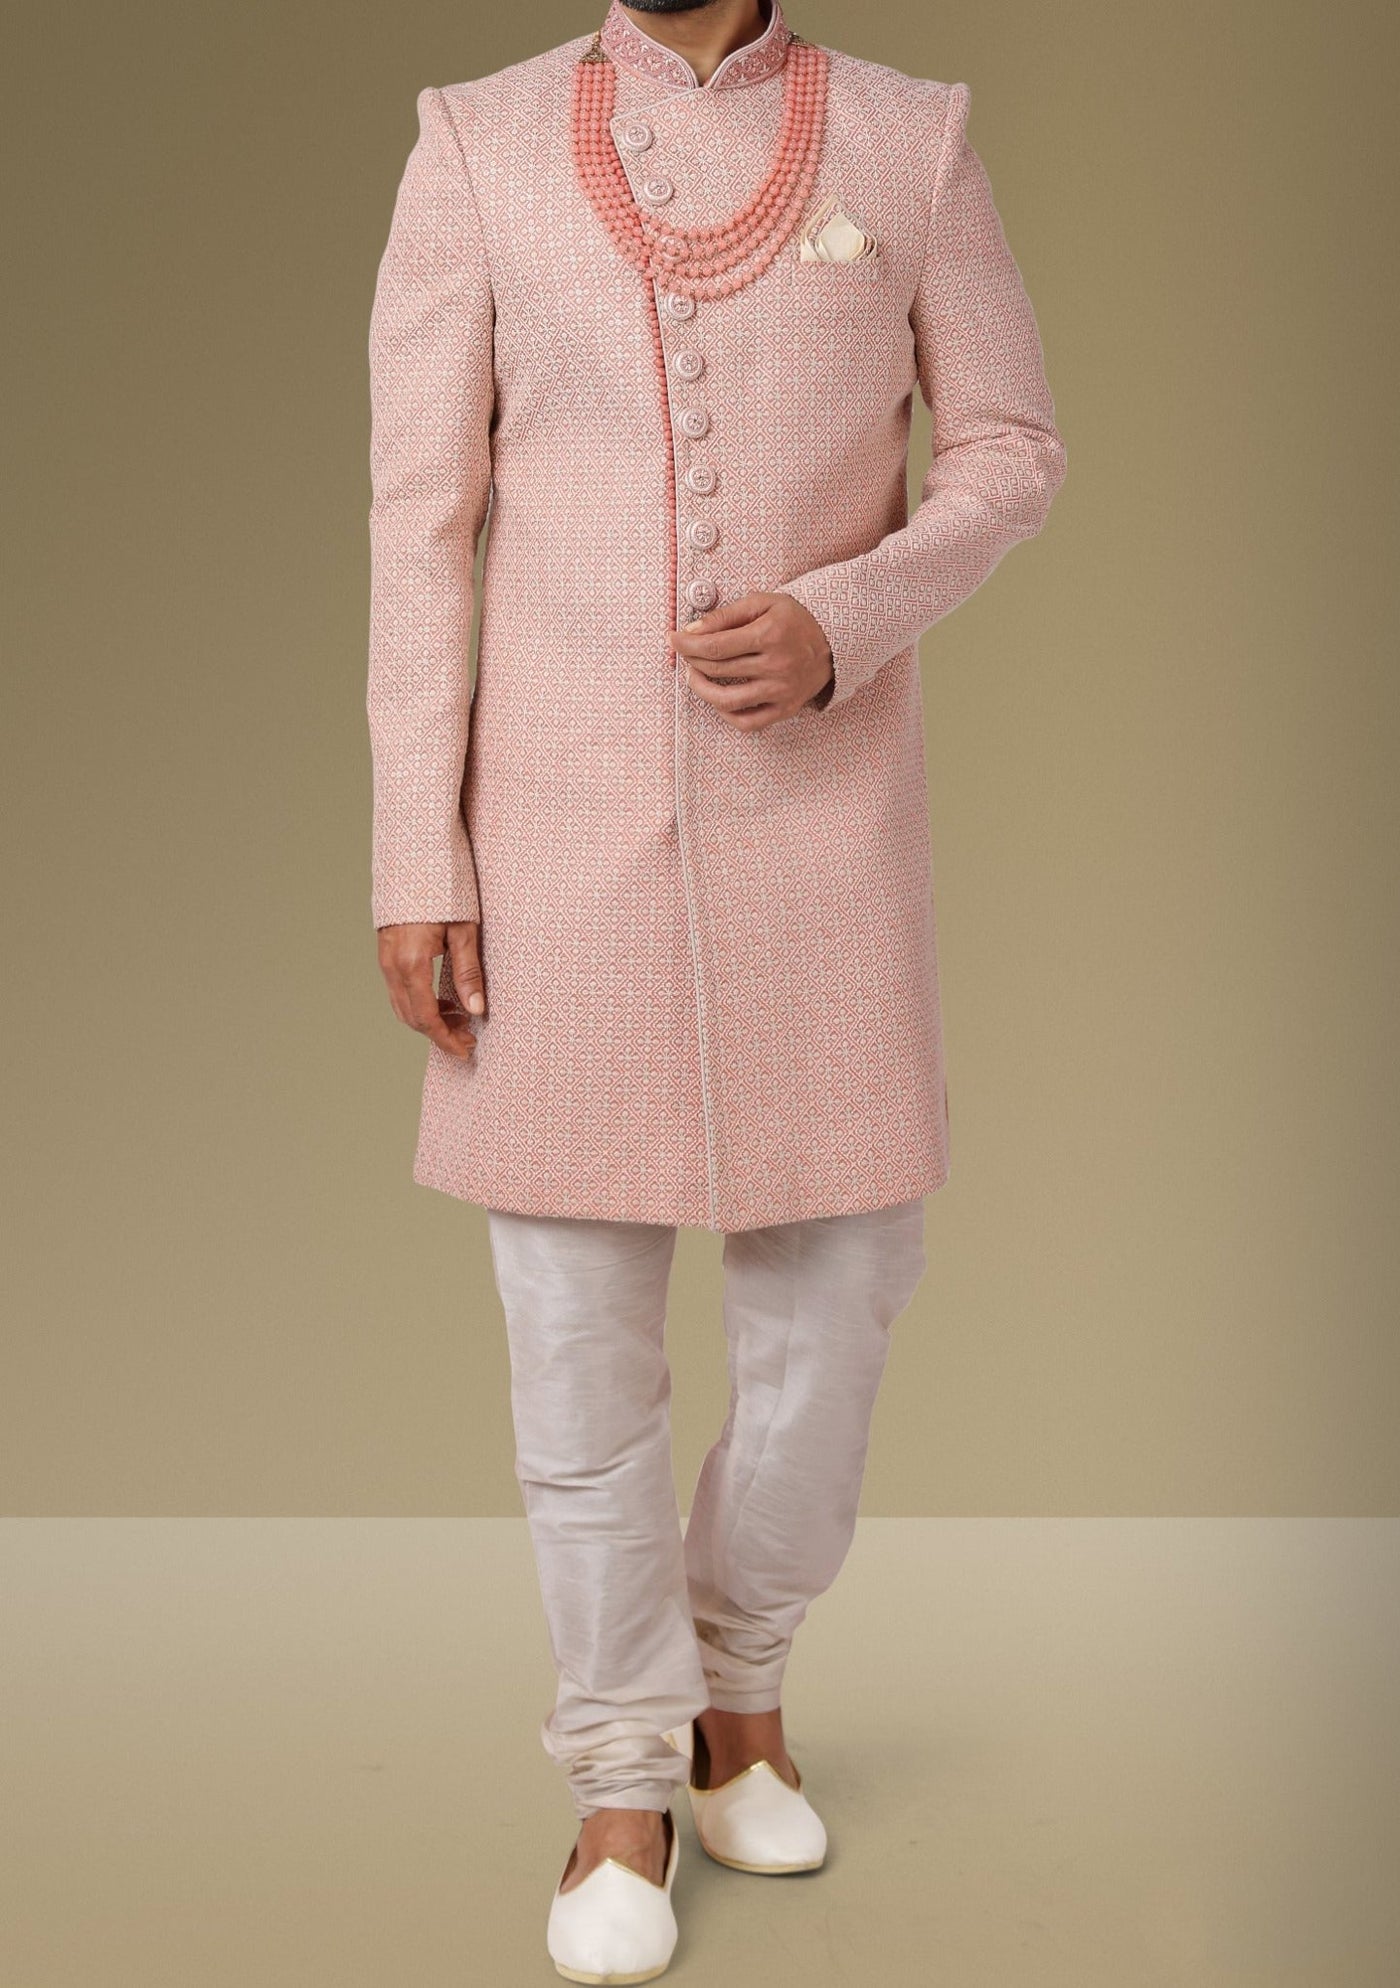 Men's Indo Western Party Wear Sherwani Suit - db18064